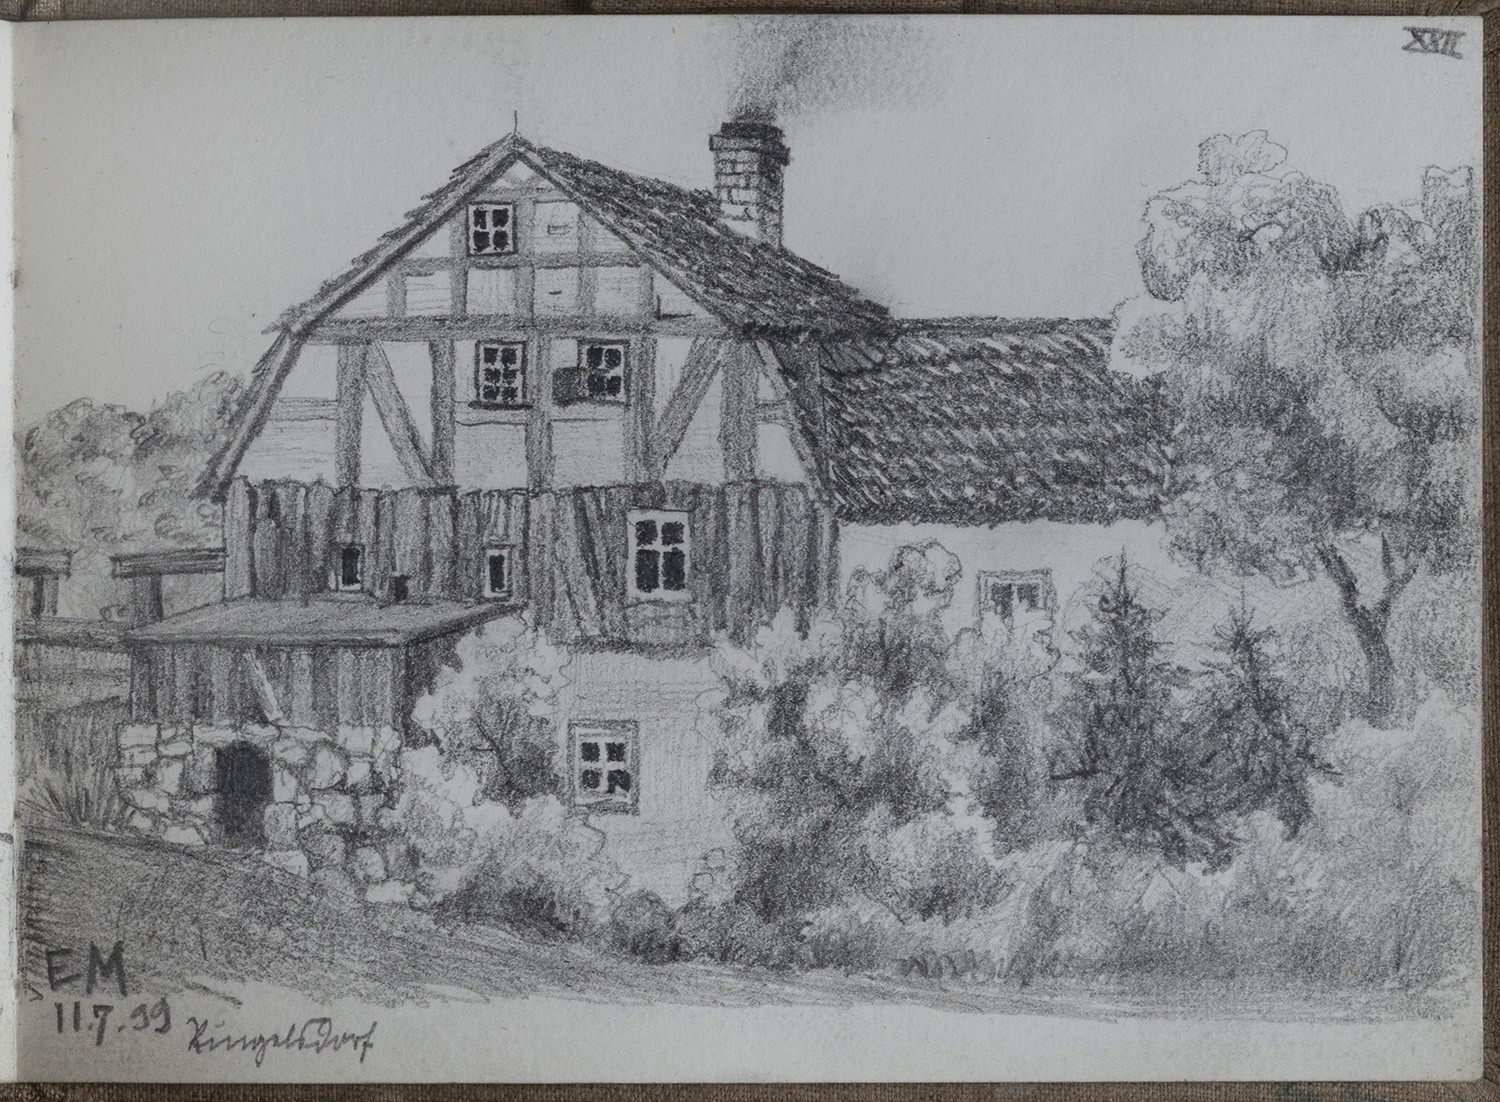 Ringelsdorf: Wohnhaus mit Anbau (Skizzenbuch Ernst Morgenstern, Bl. XXII) (Landesgeschichtliche Vereinigung für die Mark Brandenburg e.V., Archiv CC BY)